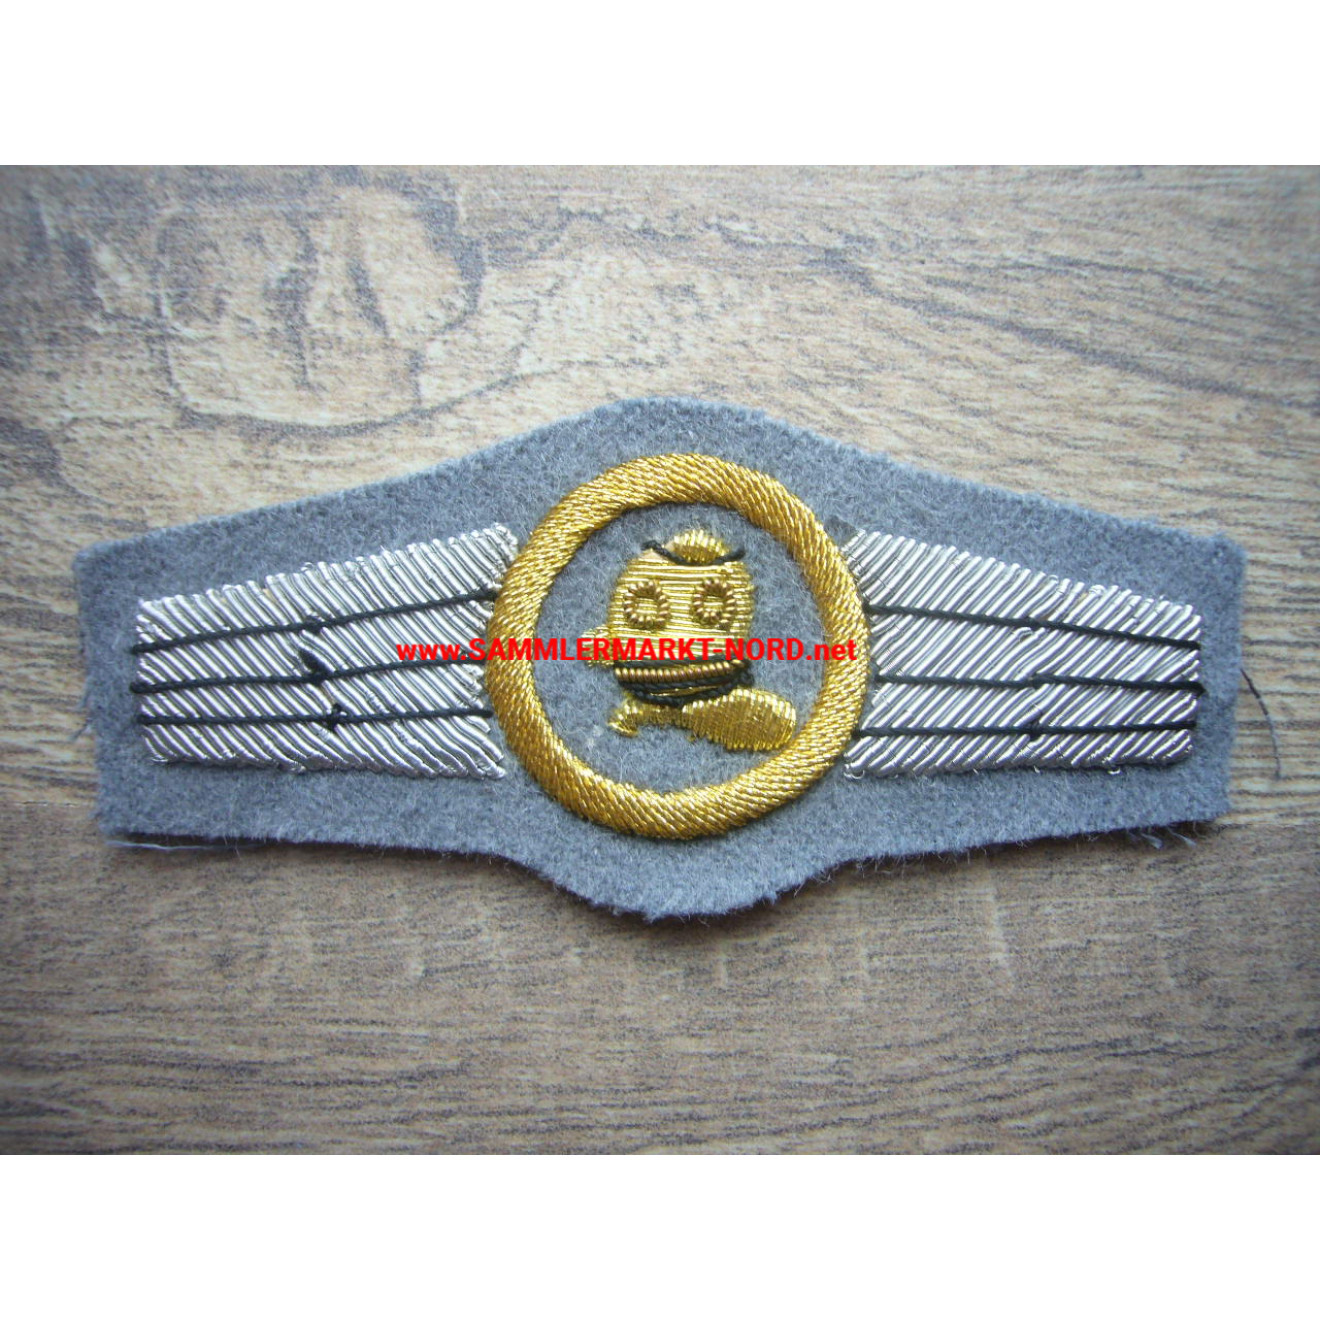 Bundesmarine - Diver's Badge in Gold - Officer's version